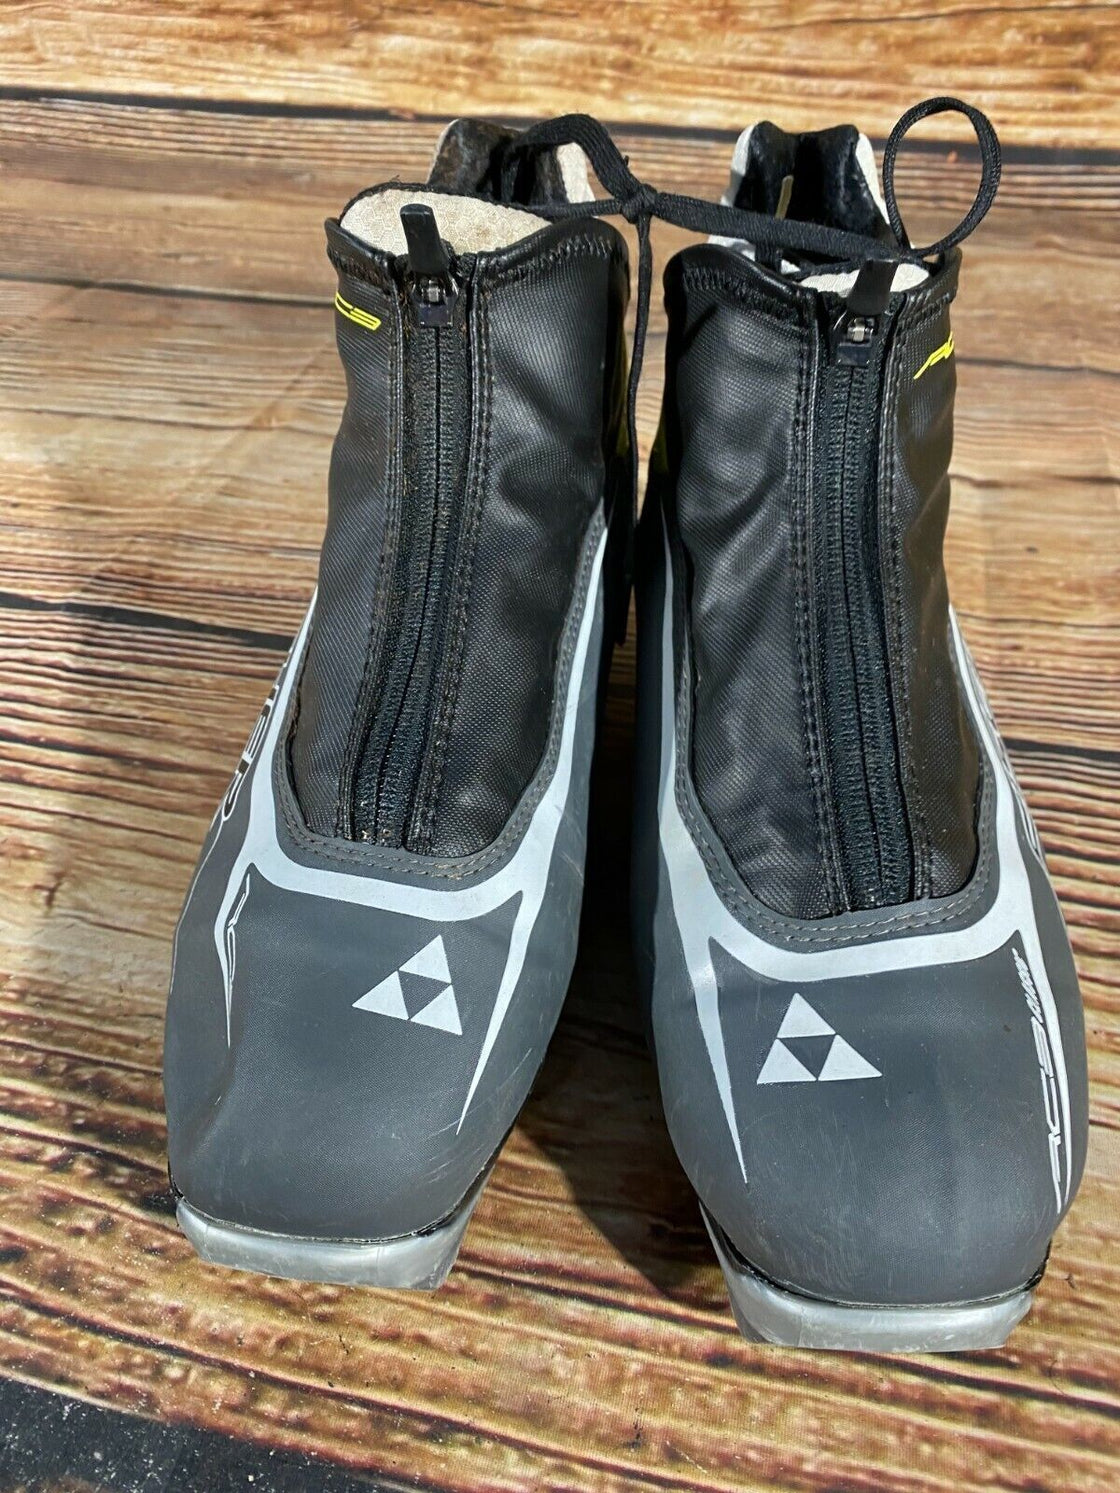 FISCHER RC3 Cross Country Ski Boots Size EU43 US9.5 NNN bindings